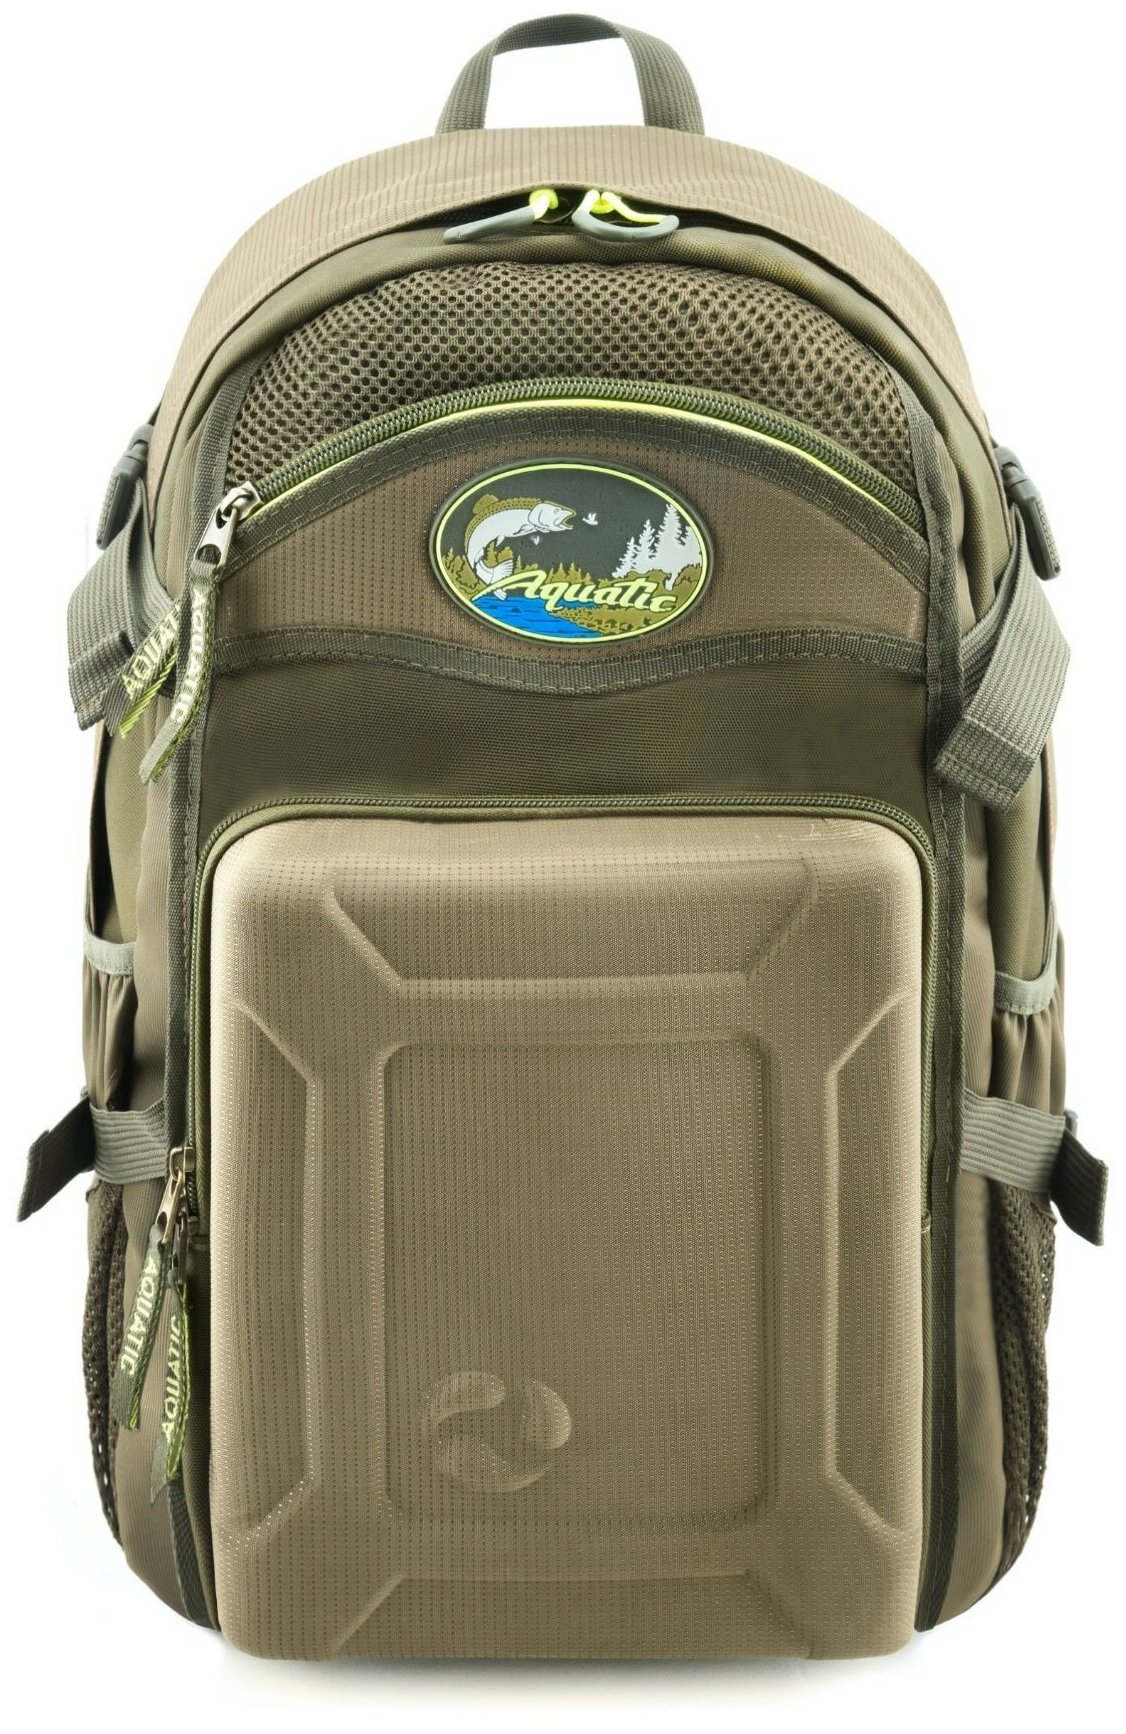 Рюкзак для охоты и рыбалки Aquatic Р-32, хаки